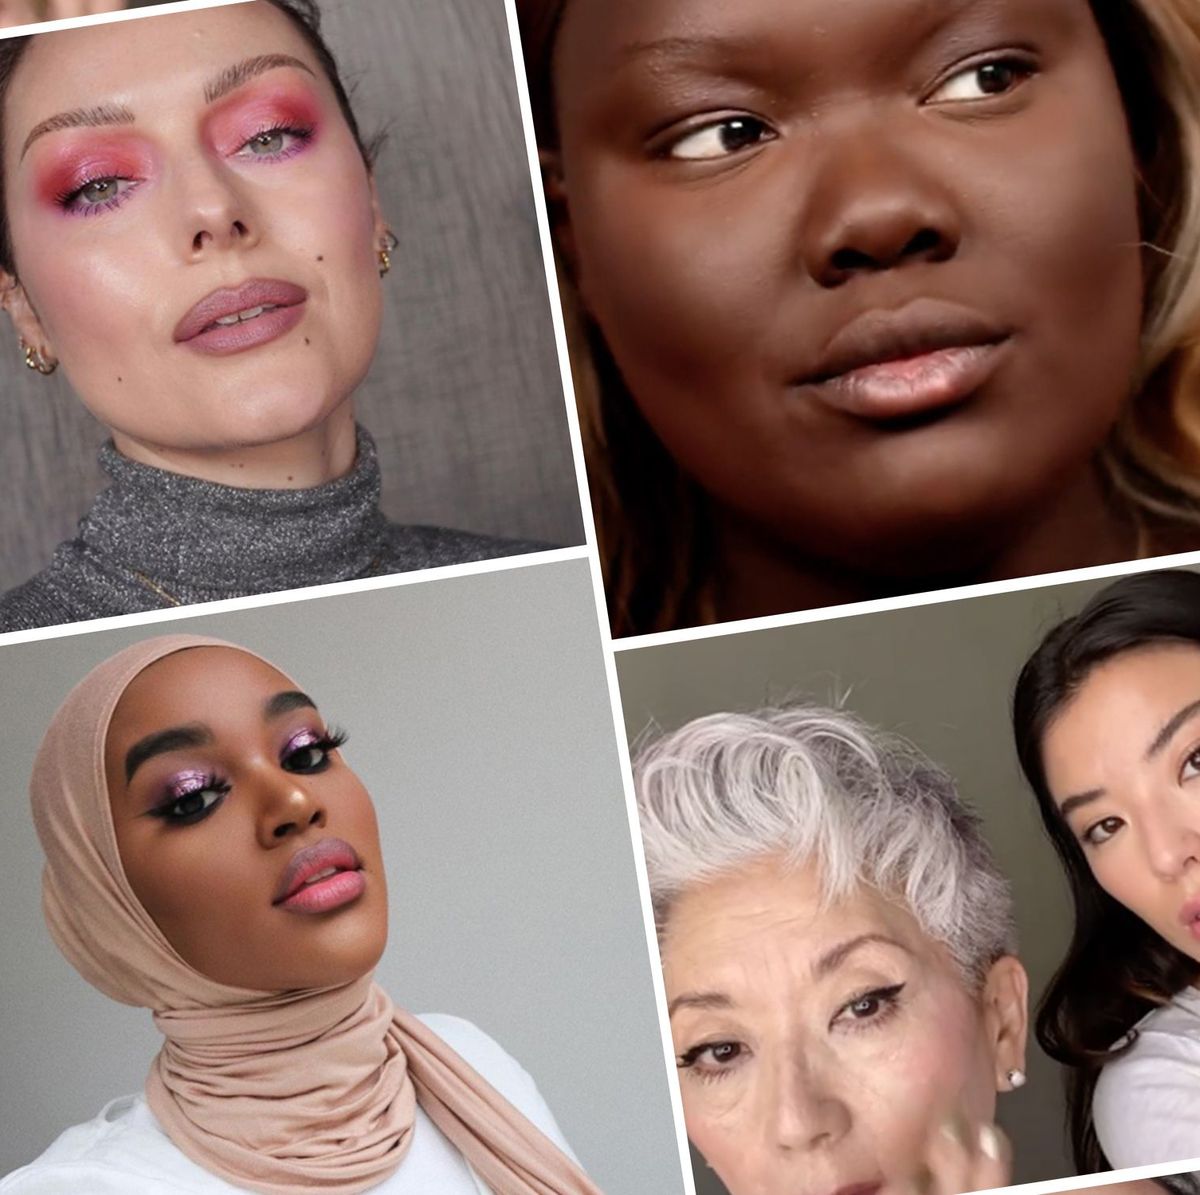 ASMR takes over beauty brands' TikTok accounts - Glossy